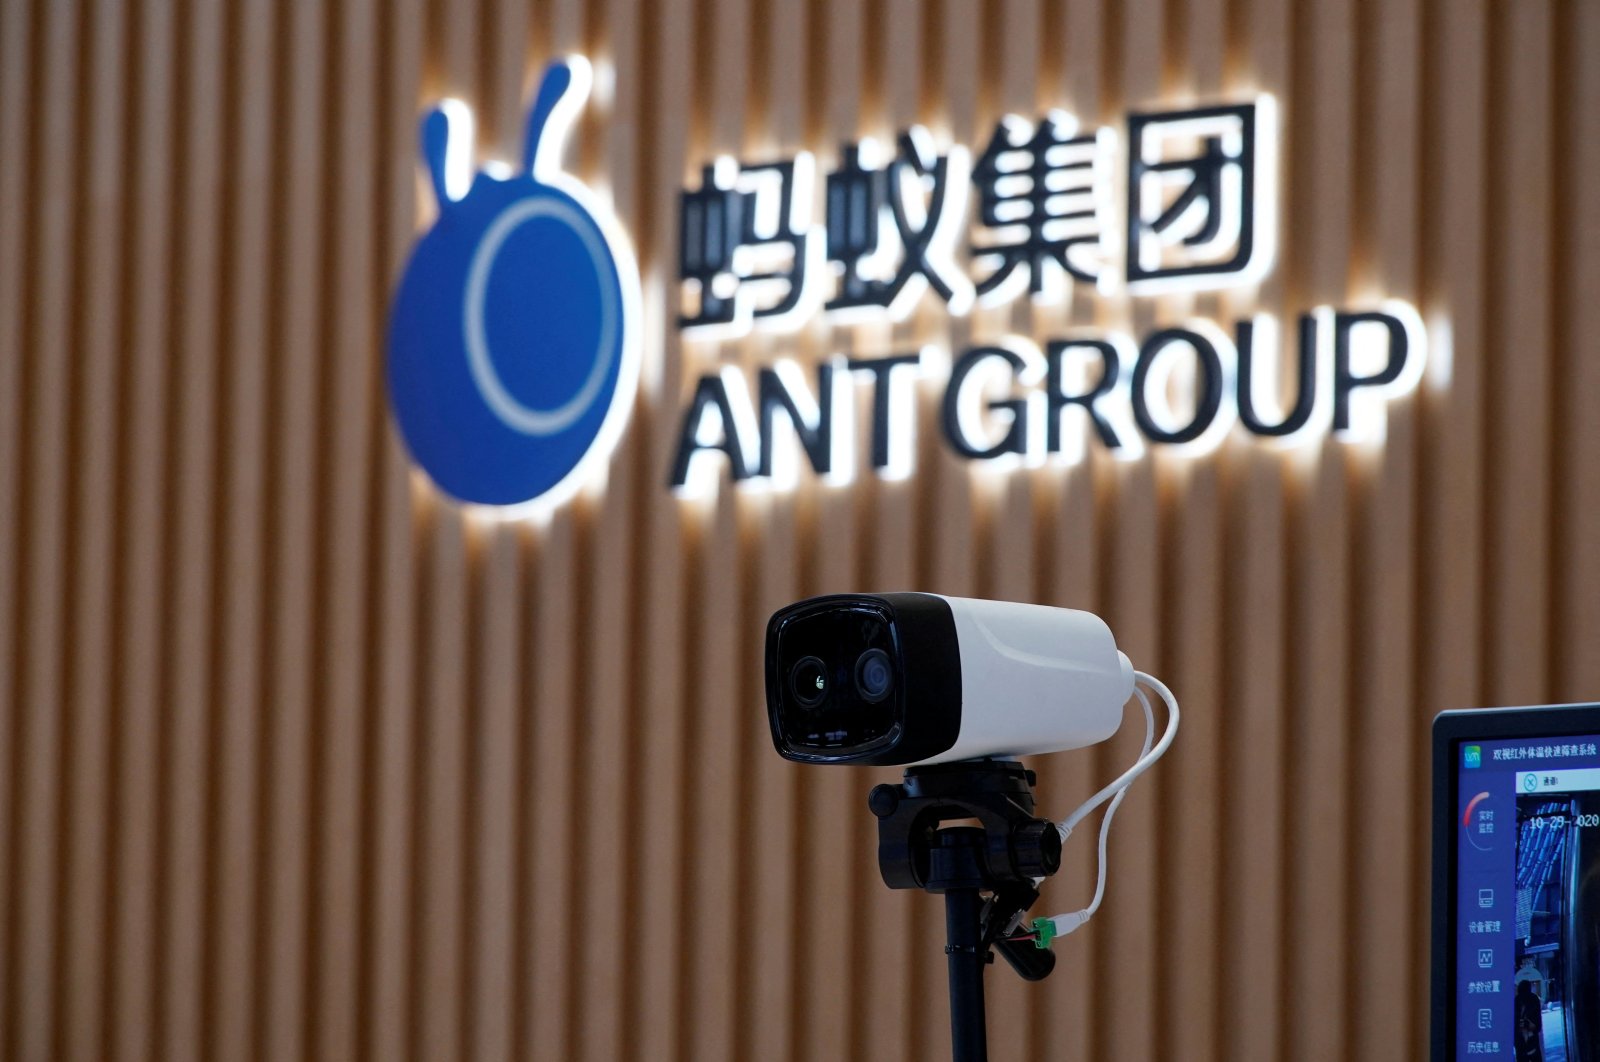 Bank sentral China menerima aplikasi Ant untuk perusahaan induk keuangan: Sumber